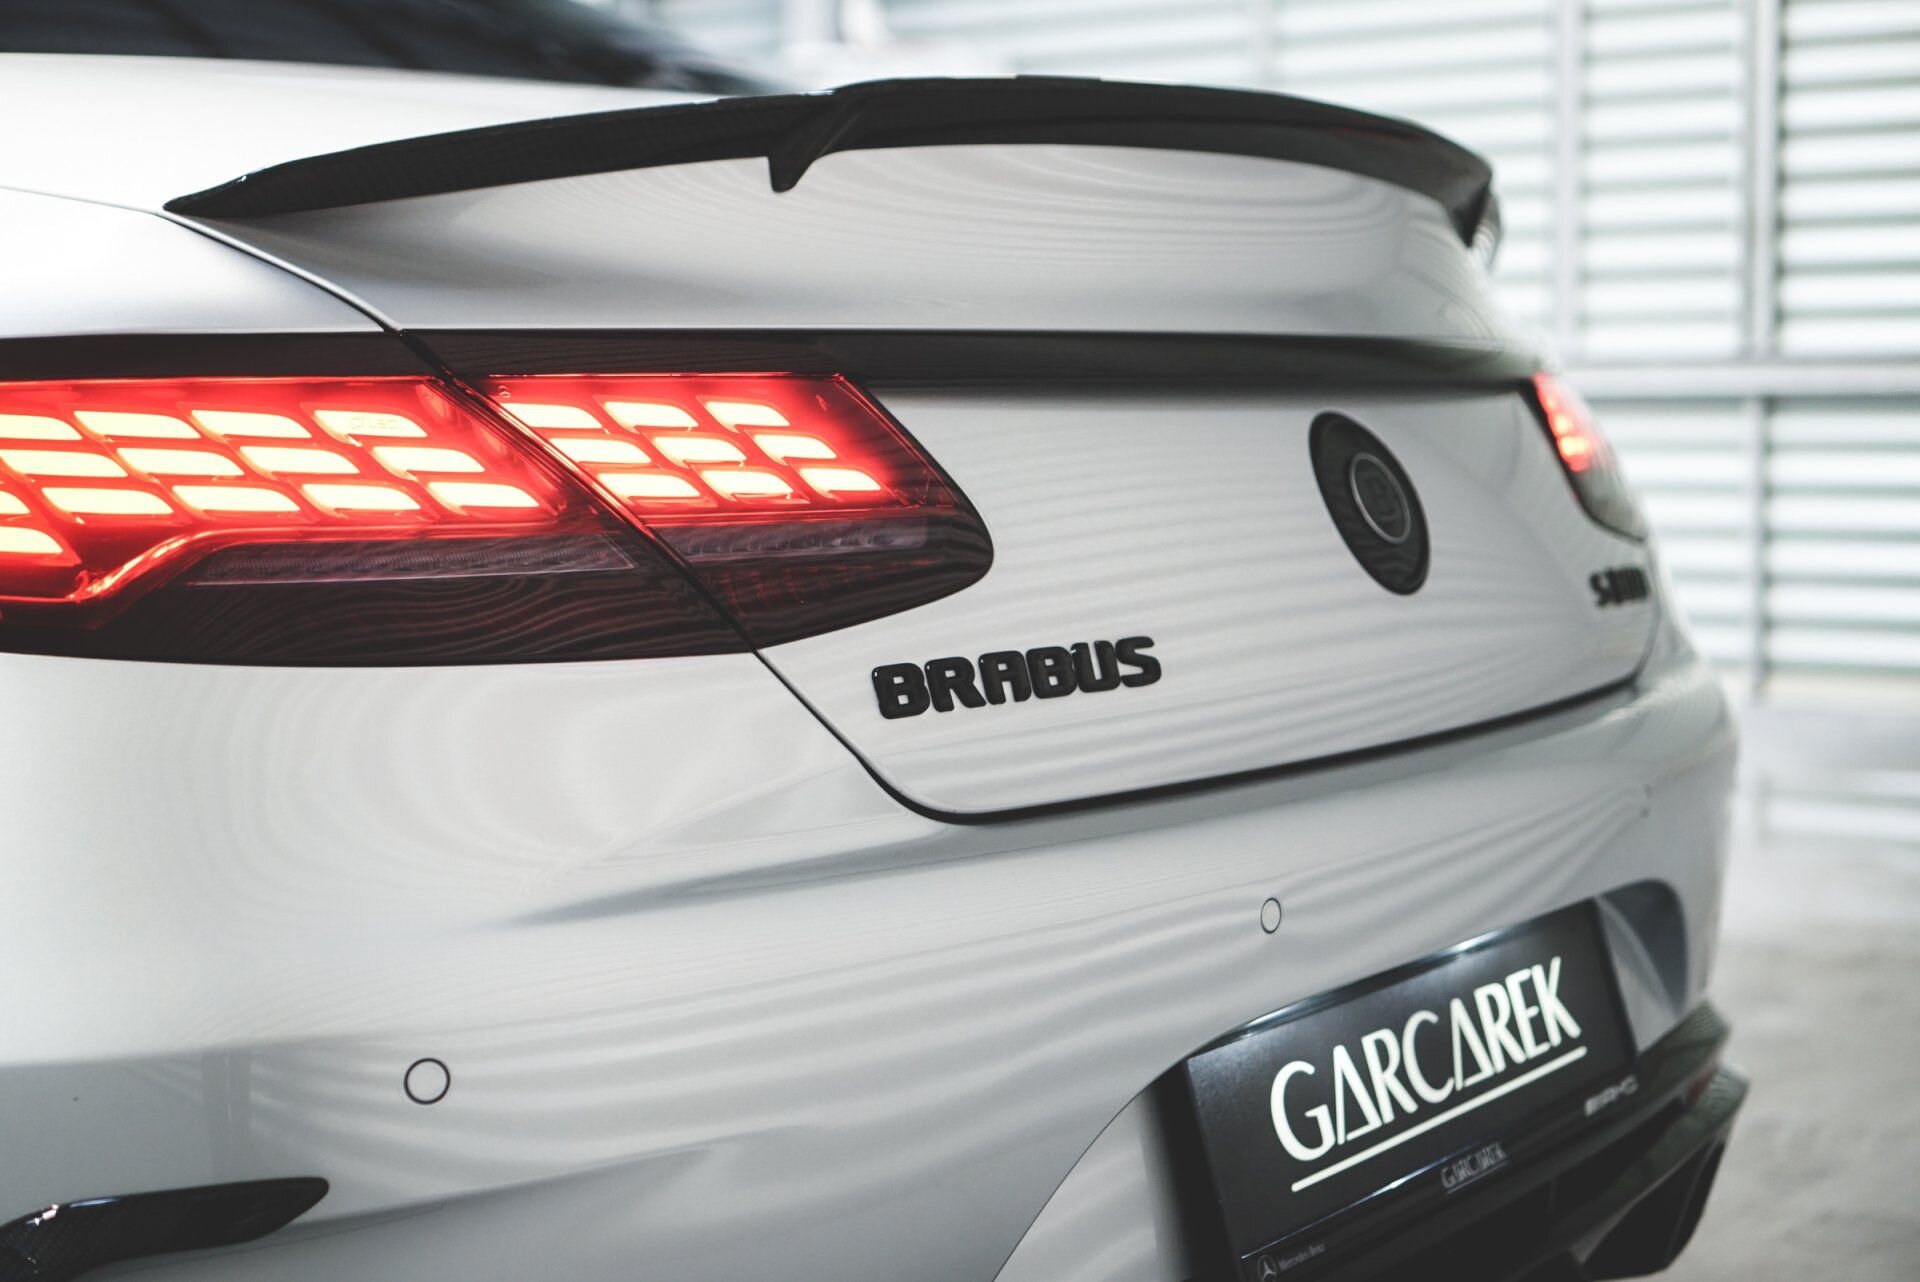 BRABUS S800 narodzony w Mercedes Garcarek [foto + wideo